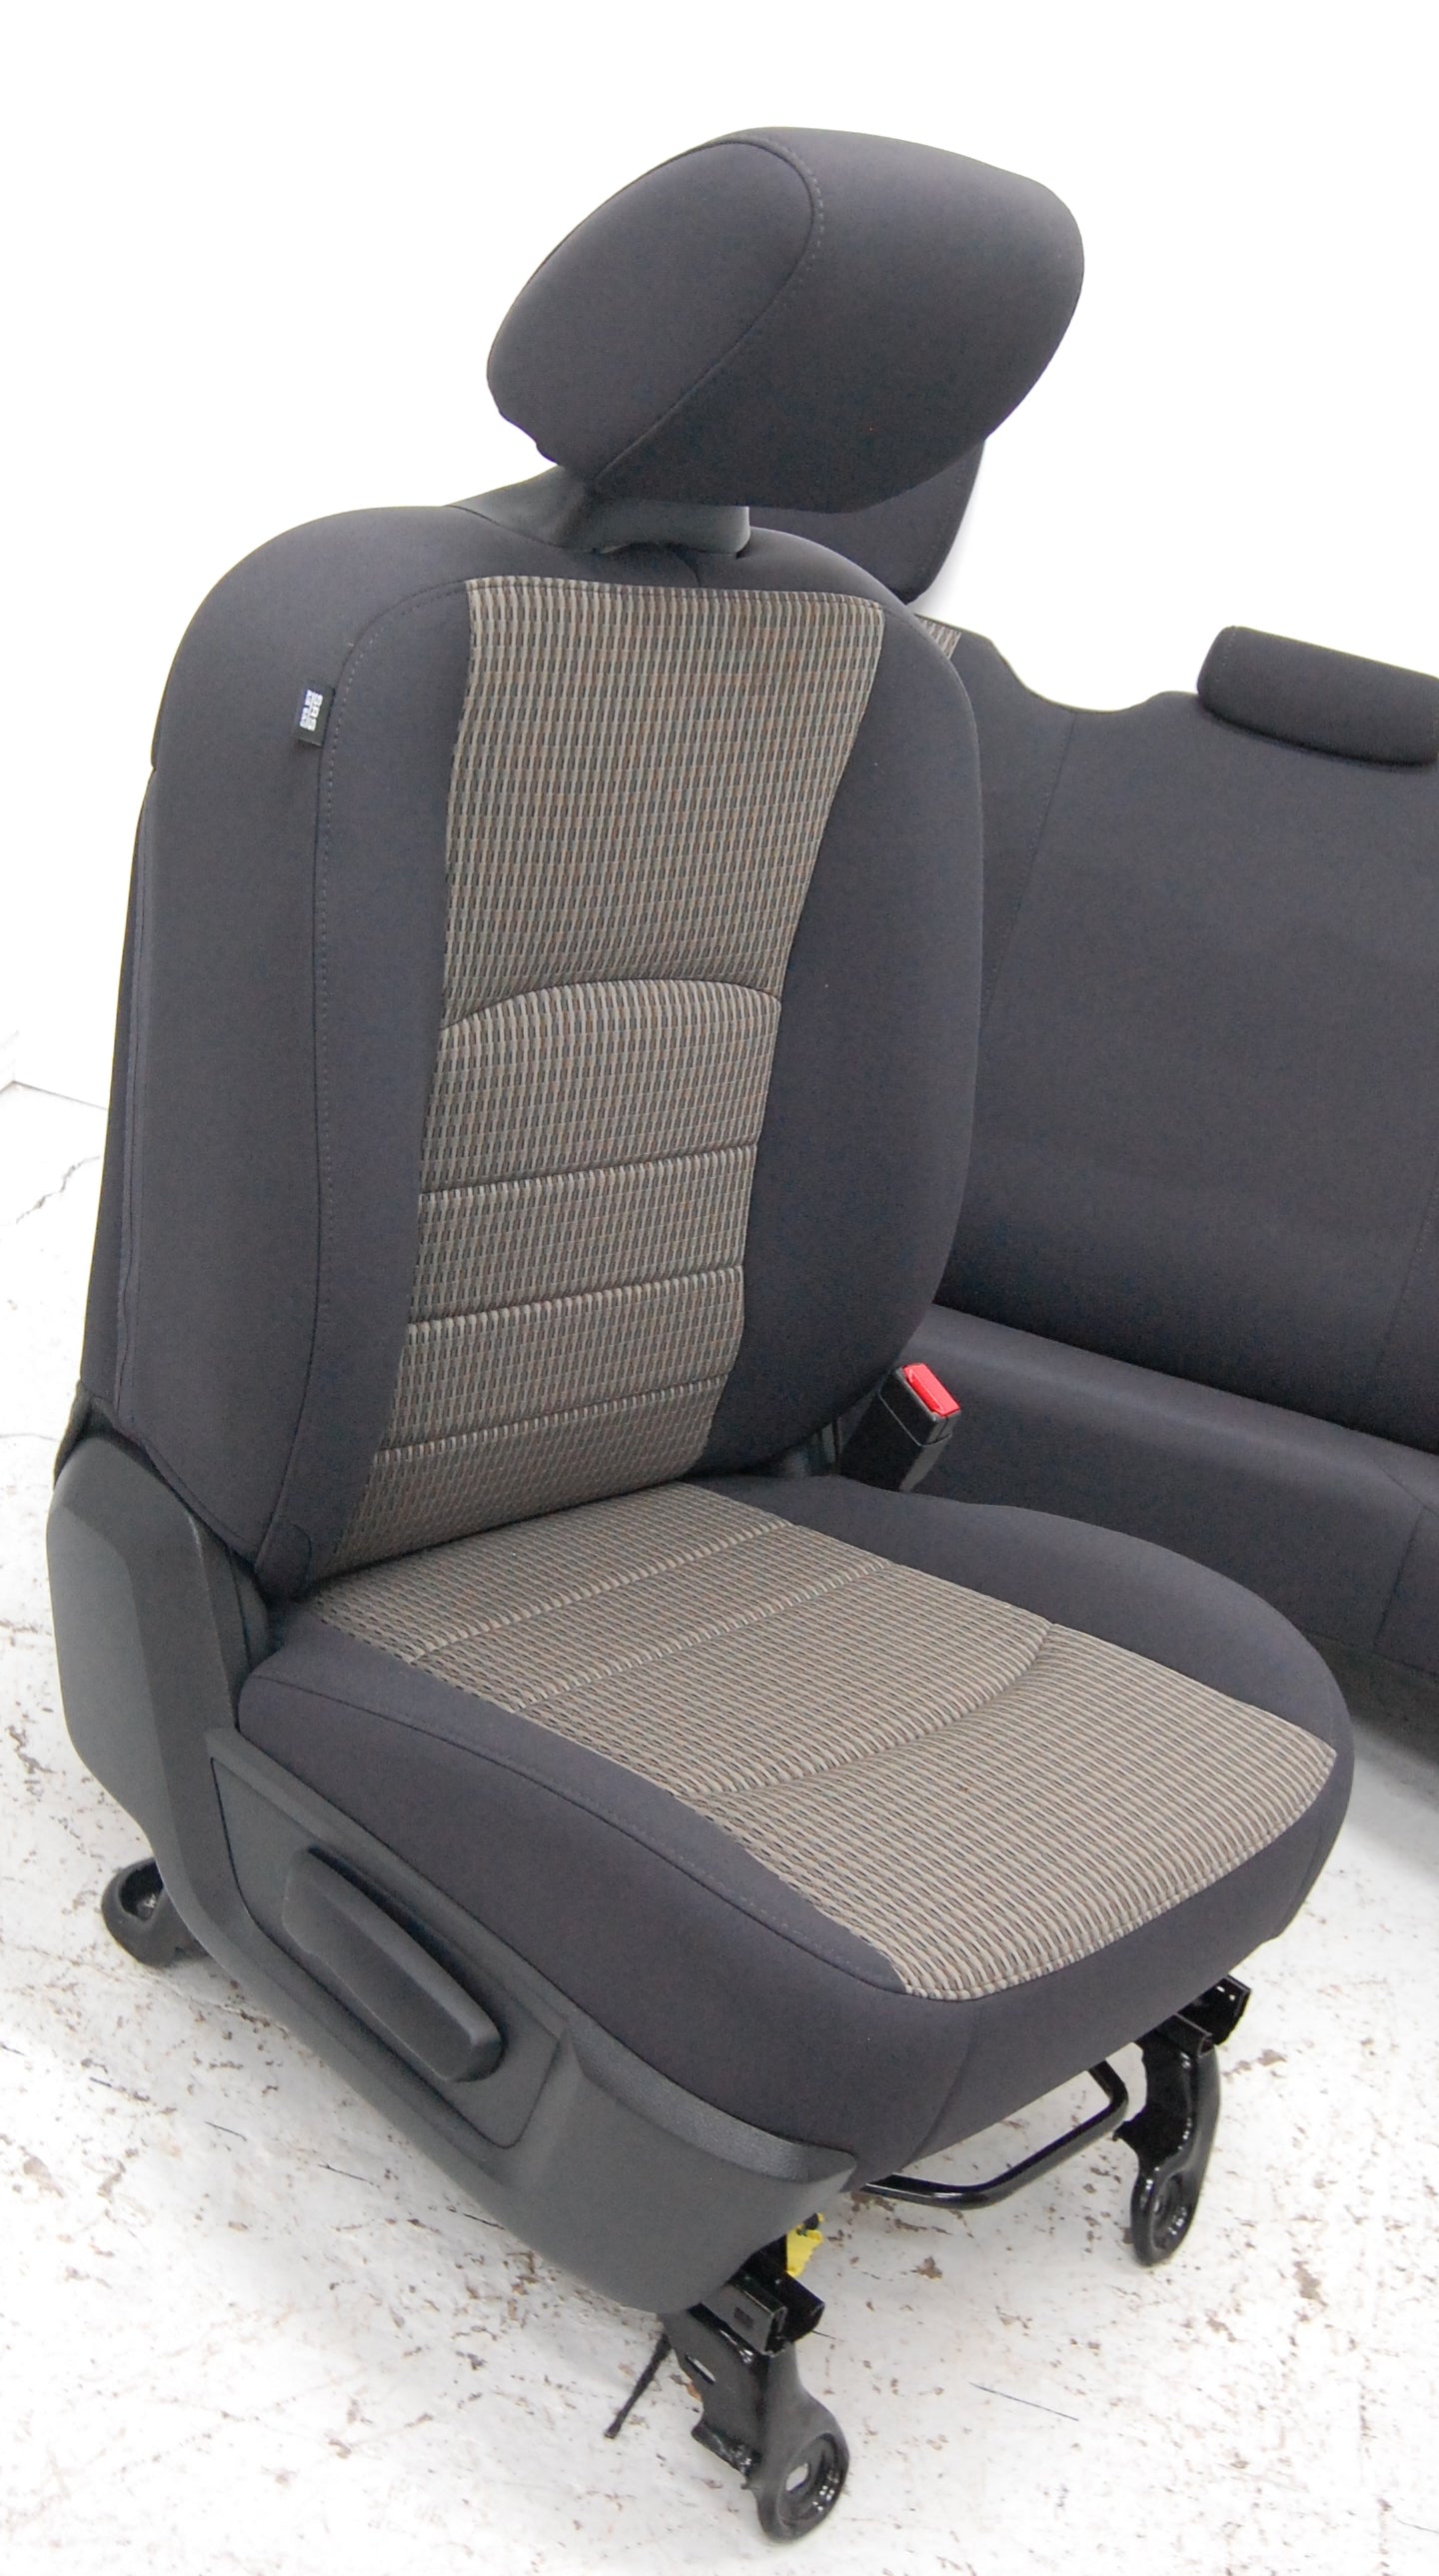 Dodge Ram Quad Cab 2012 Truck Seats & Console Interior